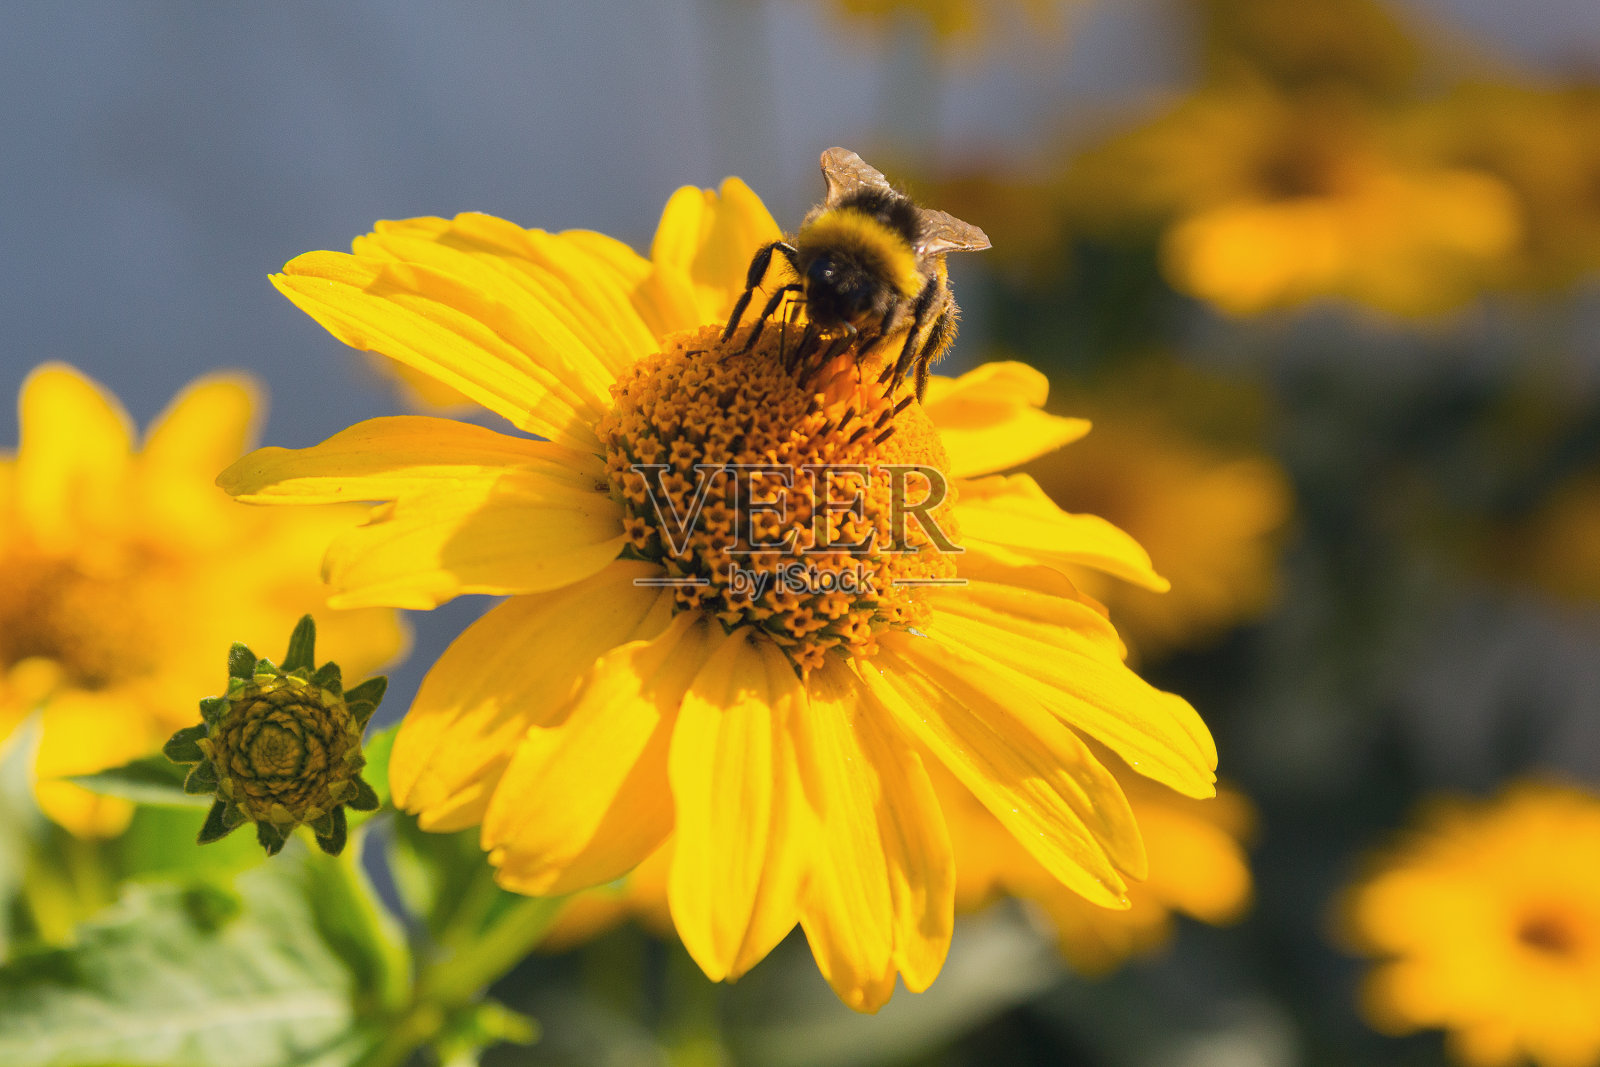 蜜蜂正在给一朵黄色的花授粉。自然照片摄影图片